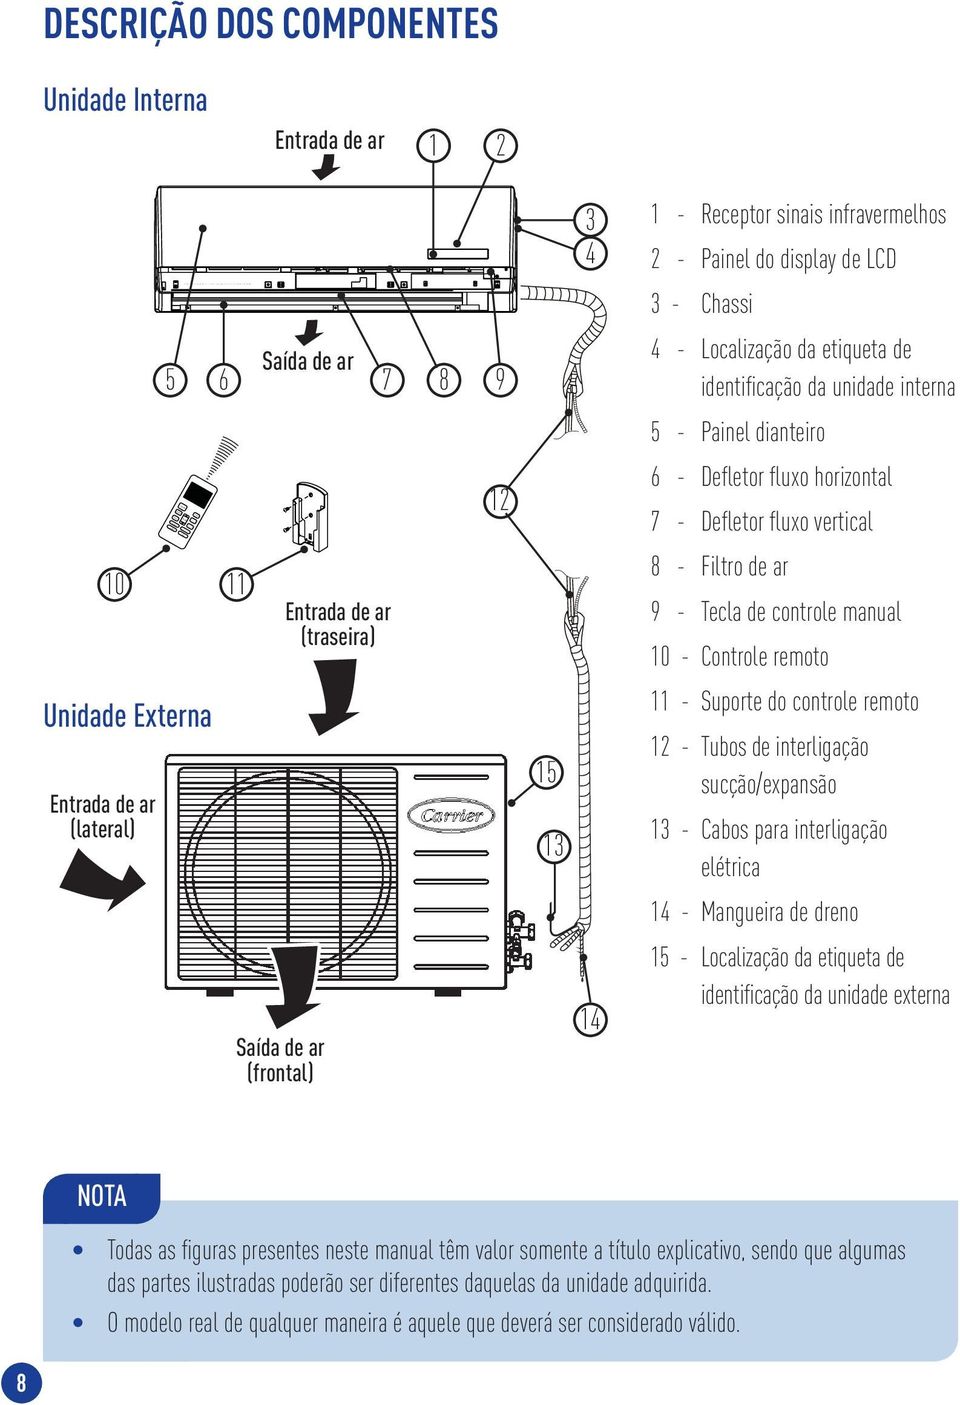 Entrada de ar (traseira) 8 - Filtro de ar 9 - Tecla de controle manual 10 - Controle remoto Unidade Externa Entrada de ar (lateral) 15 13 11 - Suporte do controle remoto 12 - Tubos de interligação